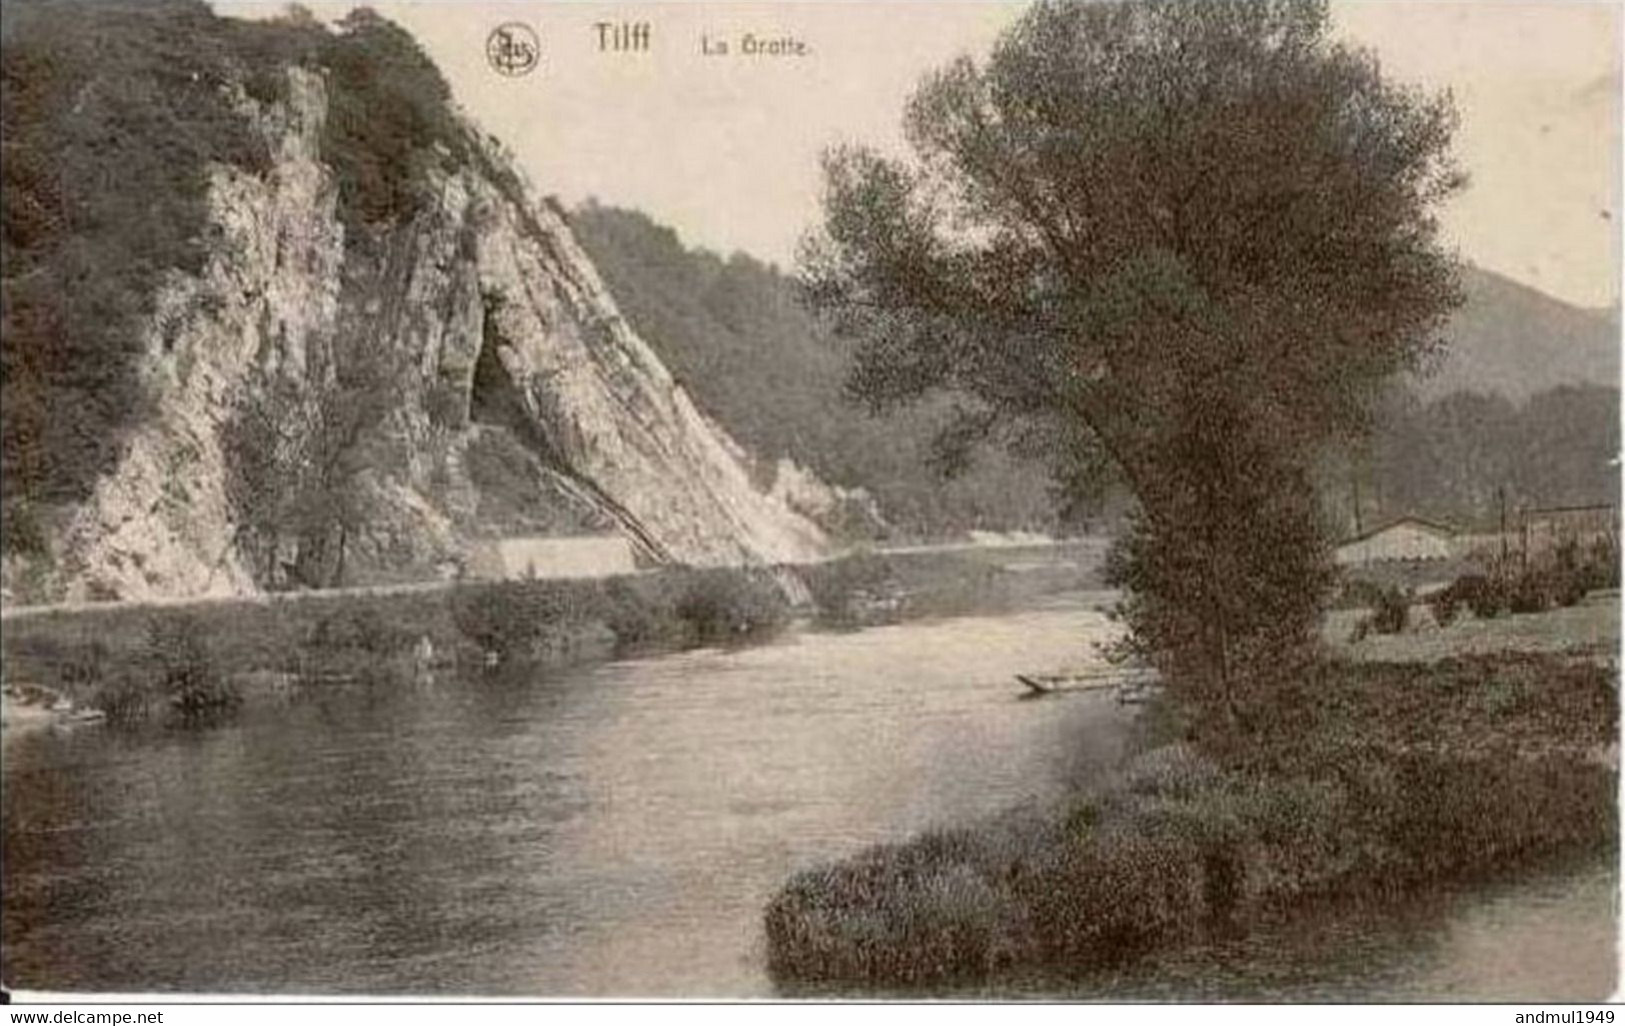 TILFF - La Grotte - Edition : Paul Ponselet, Tilff - Carte Datée De 1922 - Esneux